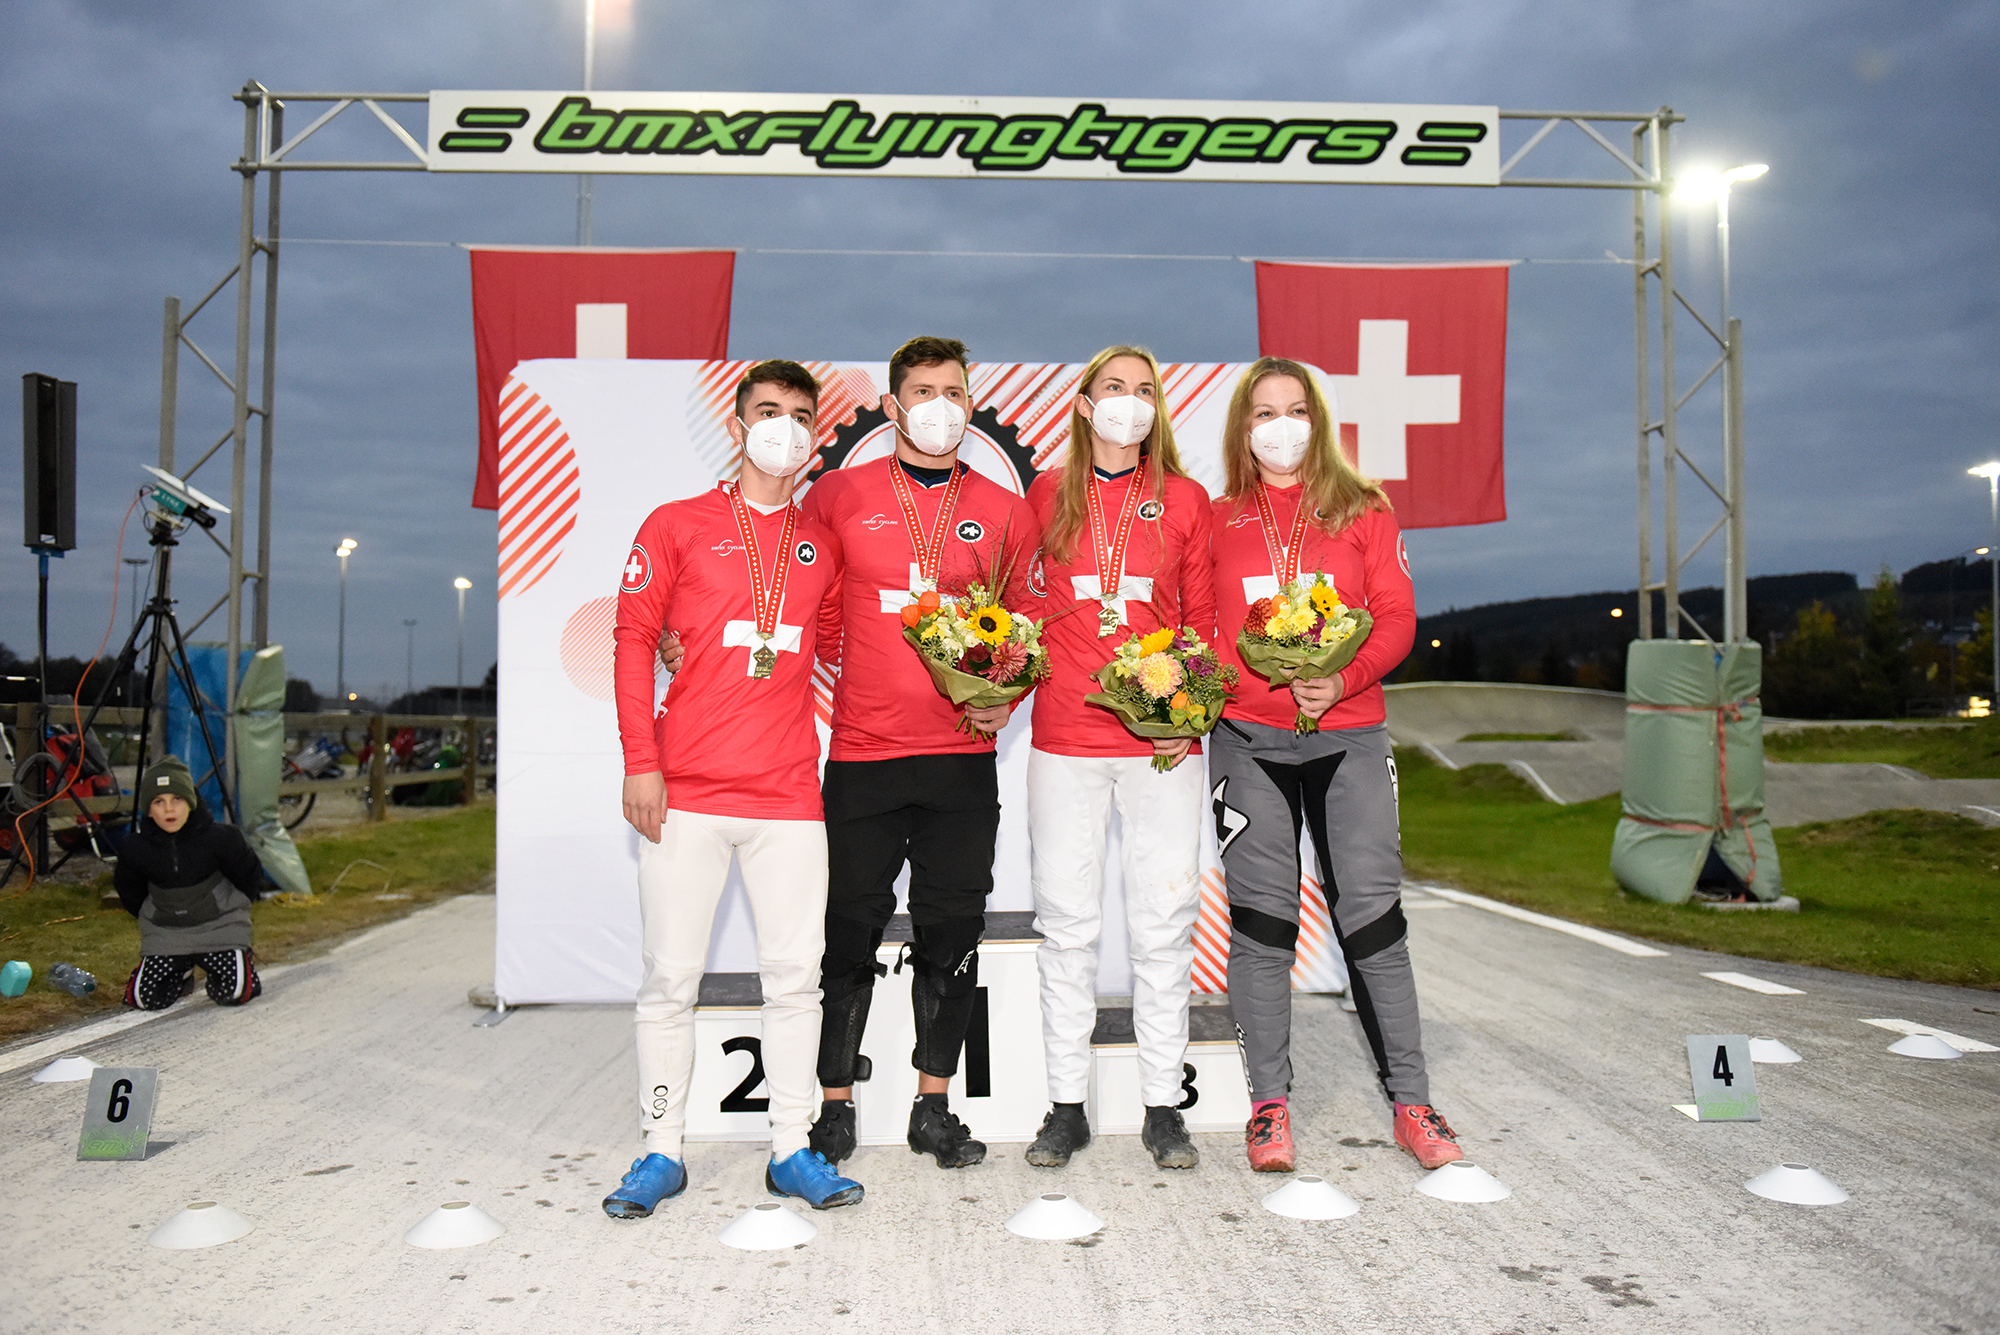 Les nouveaux champions suisses sont Cyrill Jakob (junior), Simon Marquart (élite), Zoé Claessens (élite) et Nadine Aeberhard (junior).